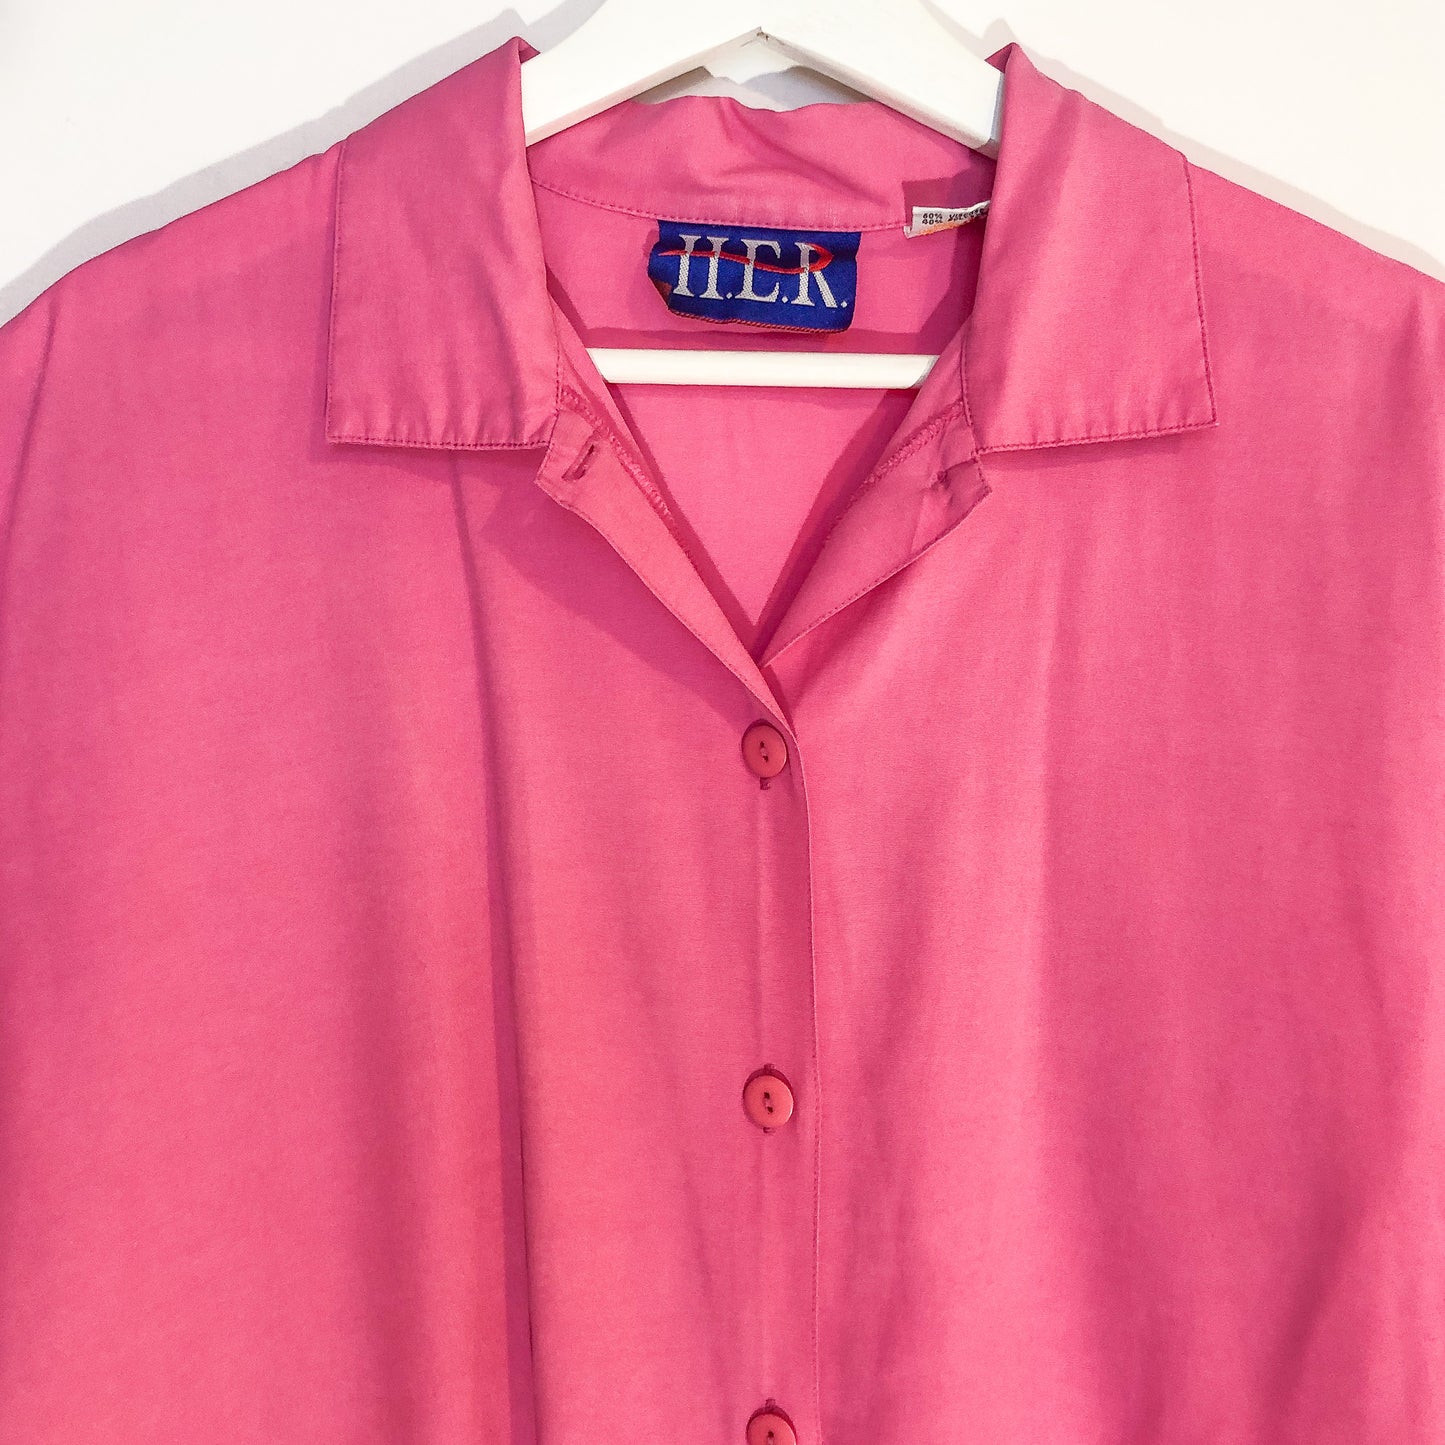 H.E.R Think Pink Button Up Shirt